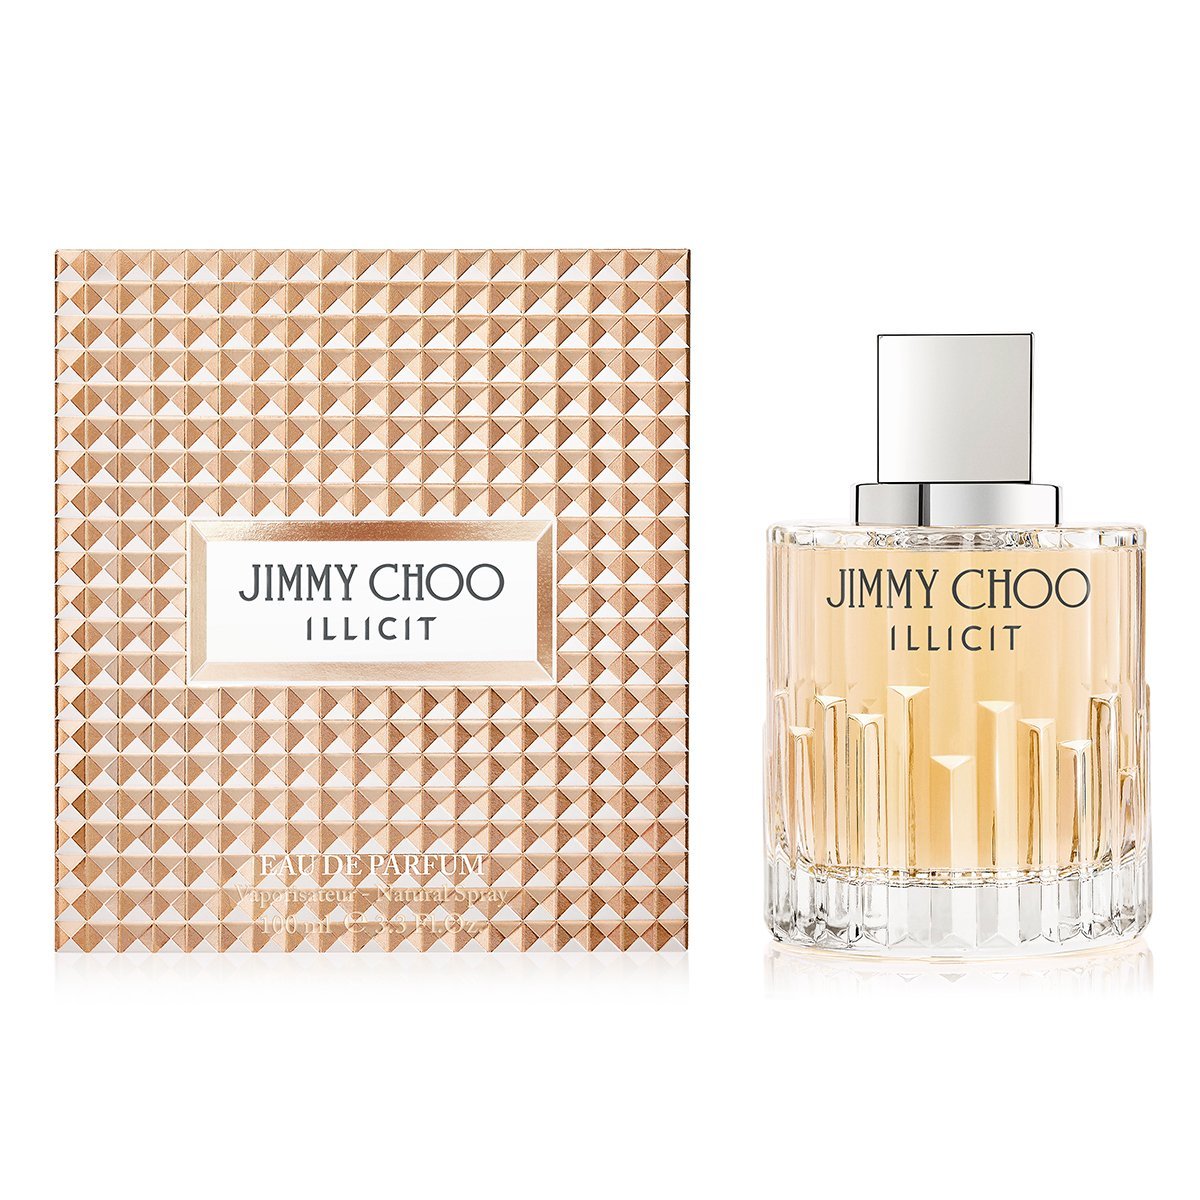 Jimmy Choo Illicit by Jimmy Choo Women 3.4 oz Eau de Parfum Spray | FragranceBaba.com